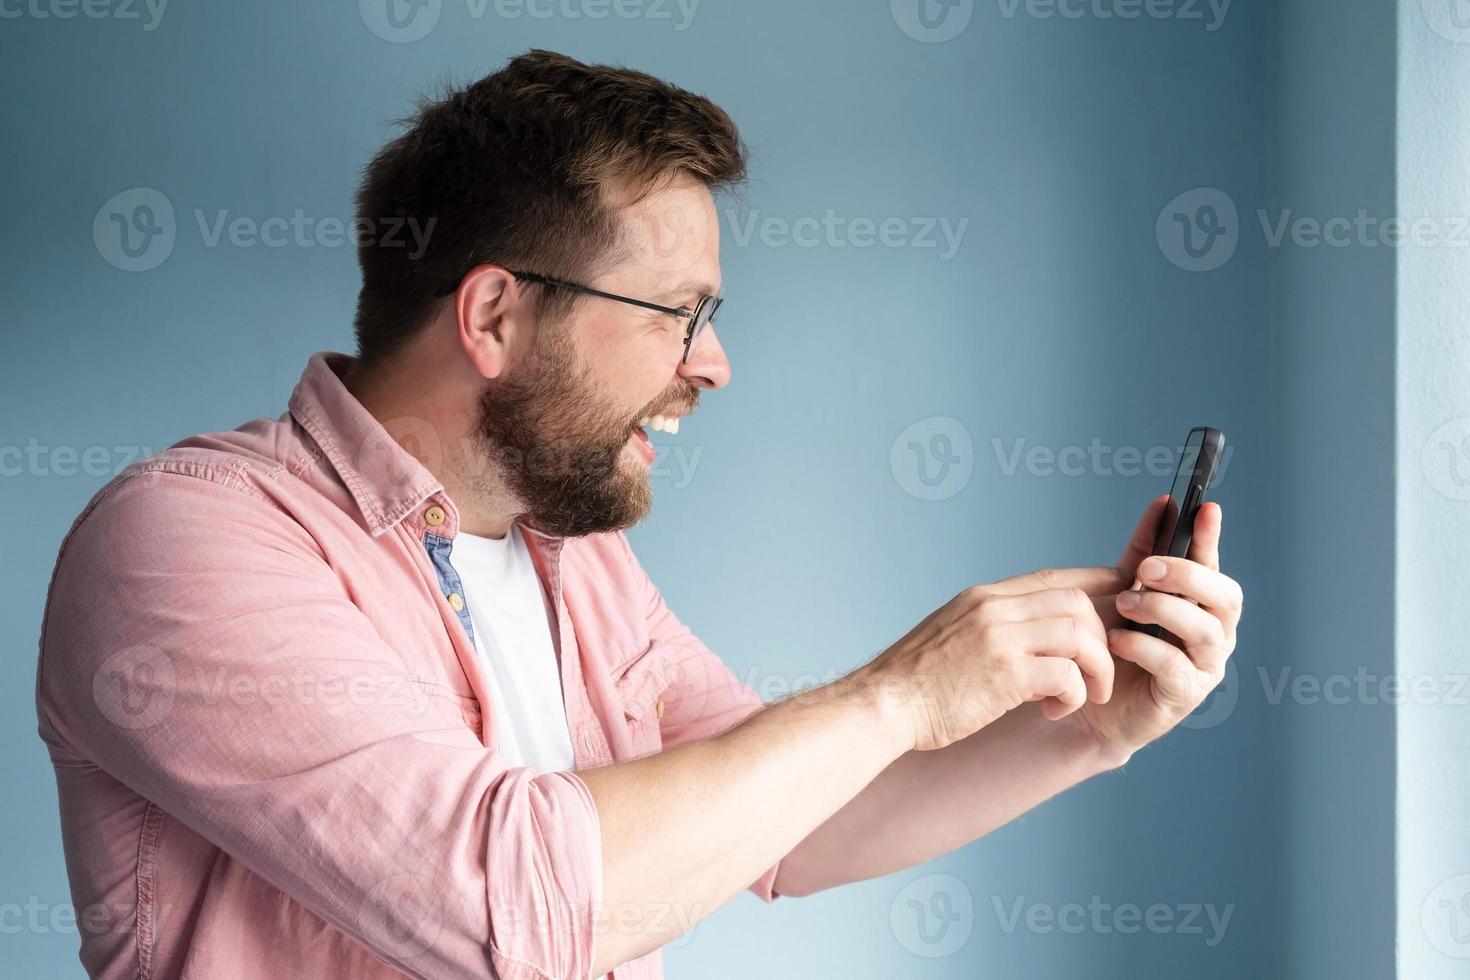 perfil de un hombre alegre y sonriente que sostiene un smartphone en sus manos y se comunica en línea a través de videocomunicación. foto